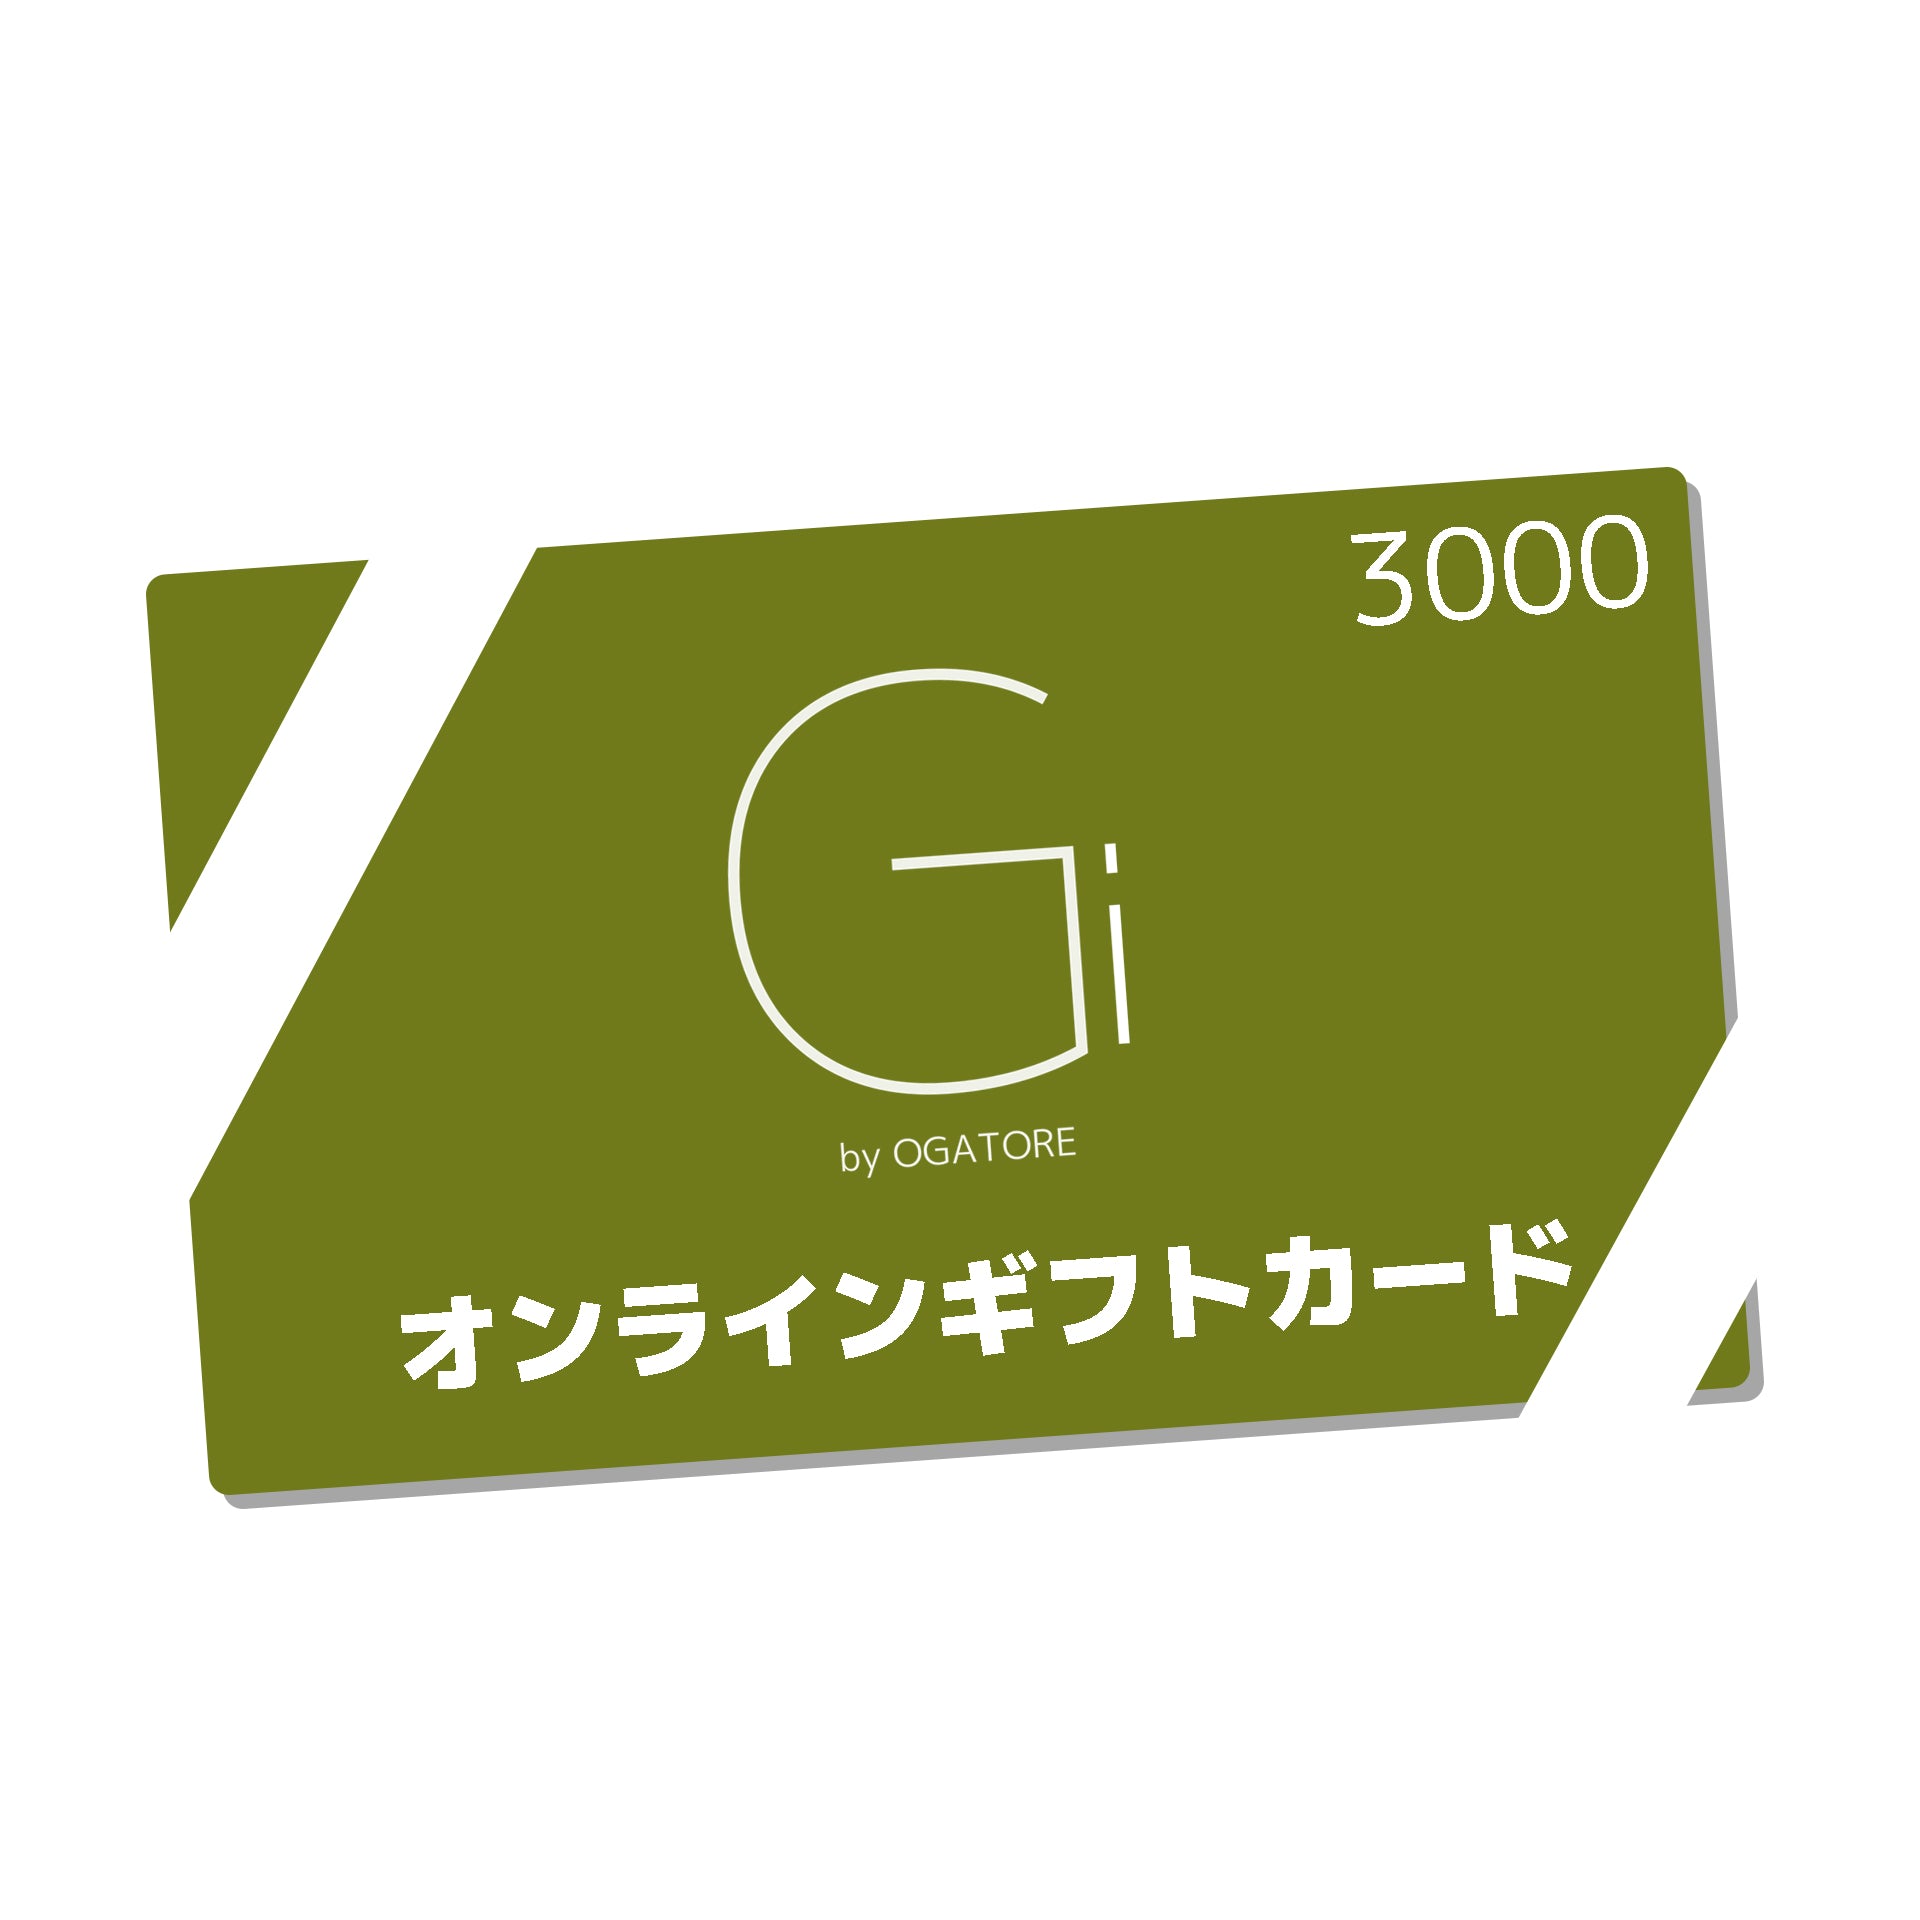 Giオンラインギフトカード